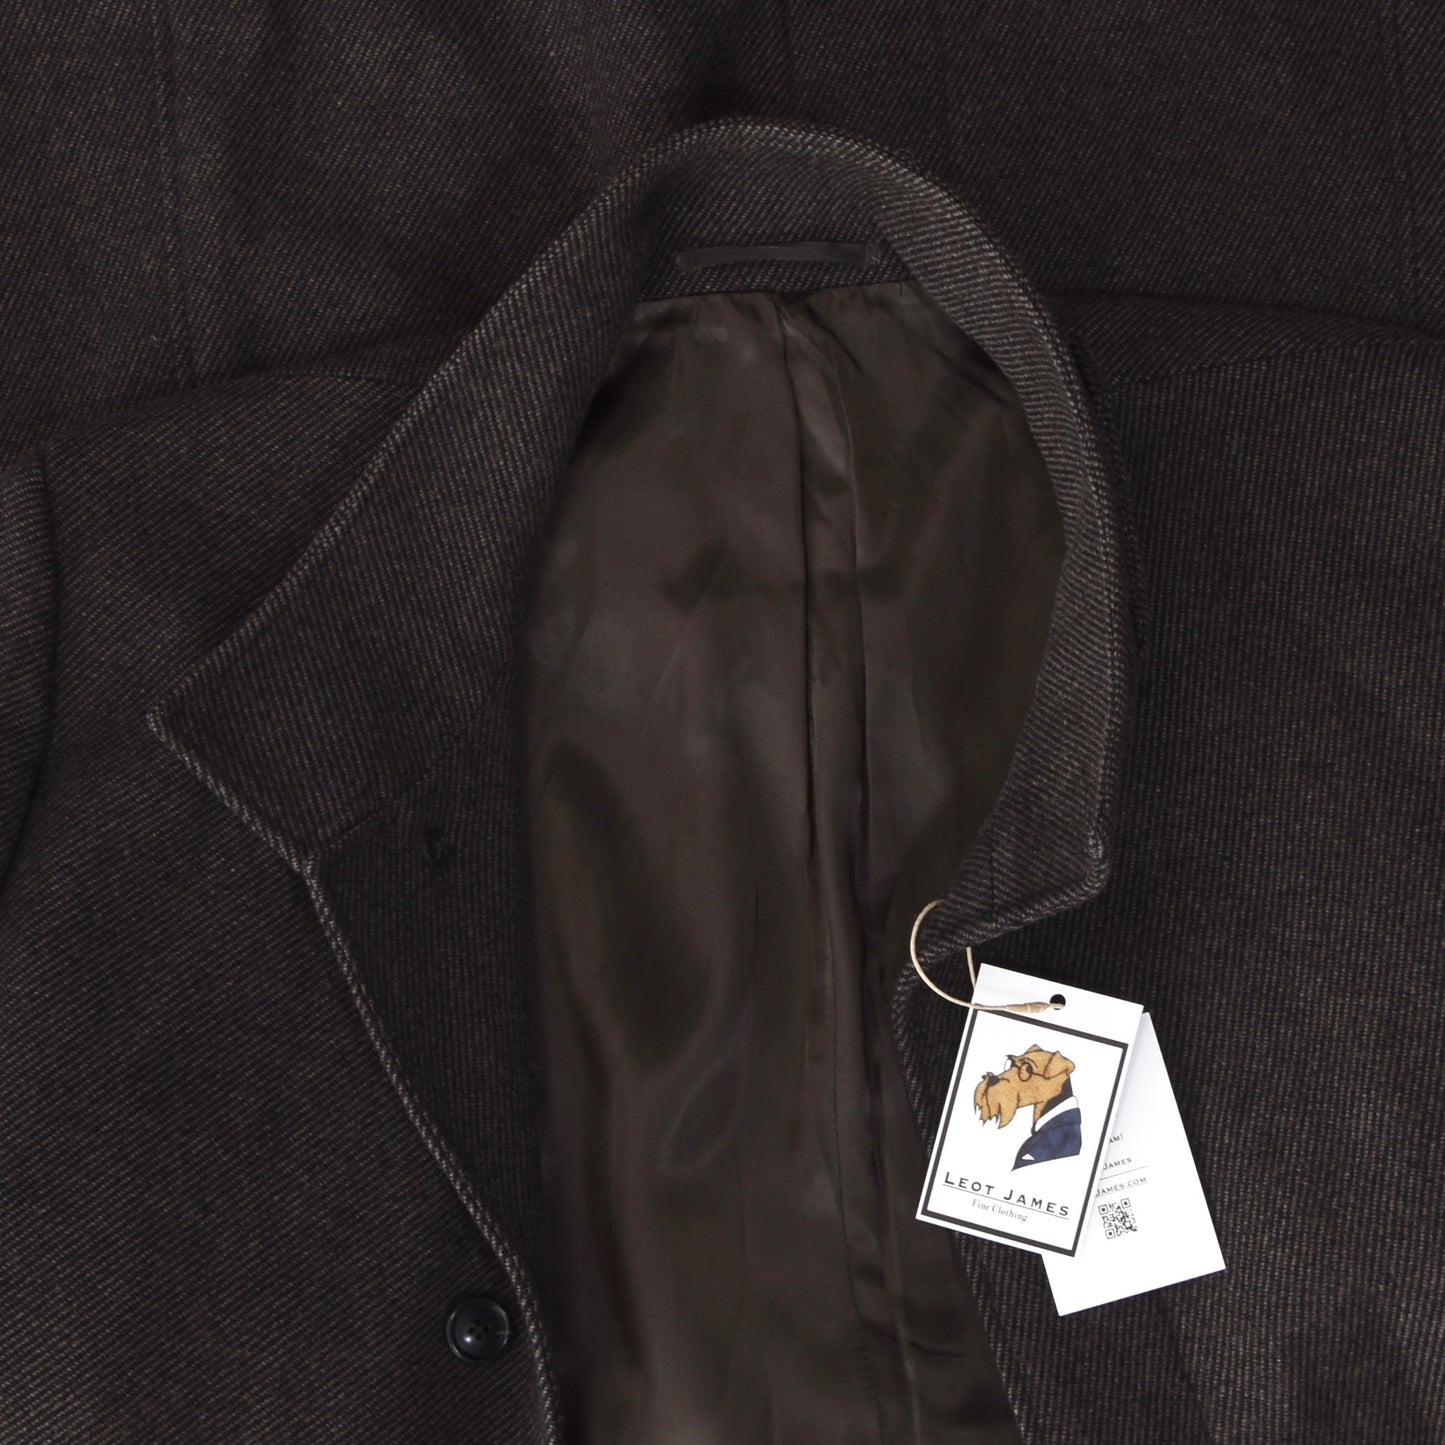 Baldessarini Mantel aus Wollmischung mit Gürtel hinten Größe 54 - Braun